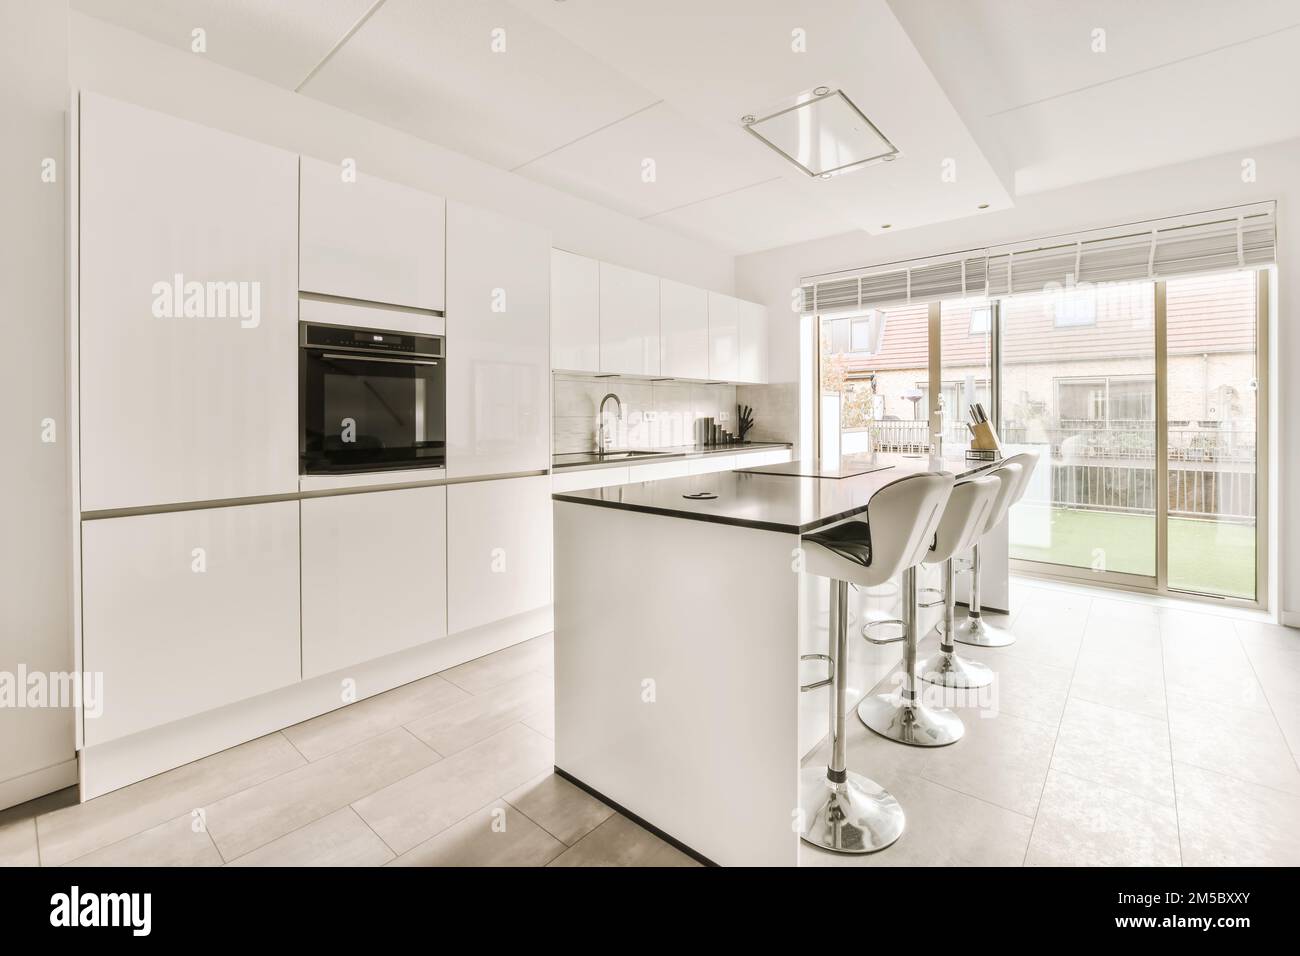 Eine moderne Küche mit weißen Schränken und Geräten im mittleren Teil des Zimmers, der zur Terrasse hin offen ist Stockfoto